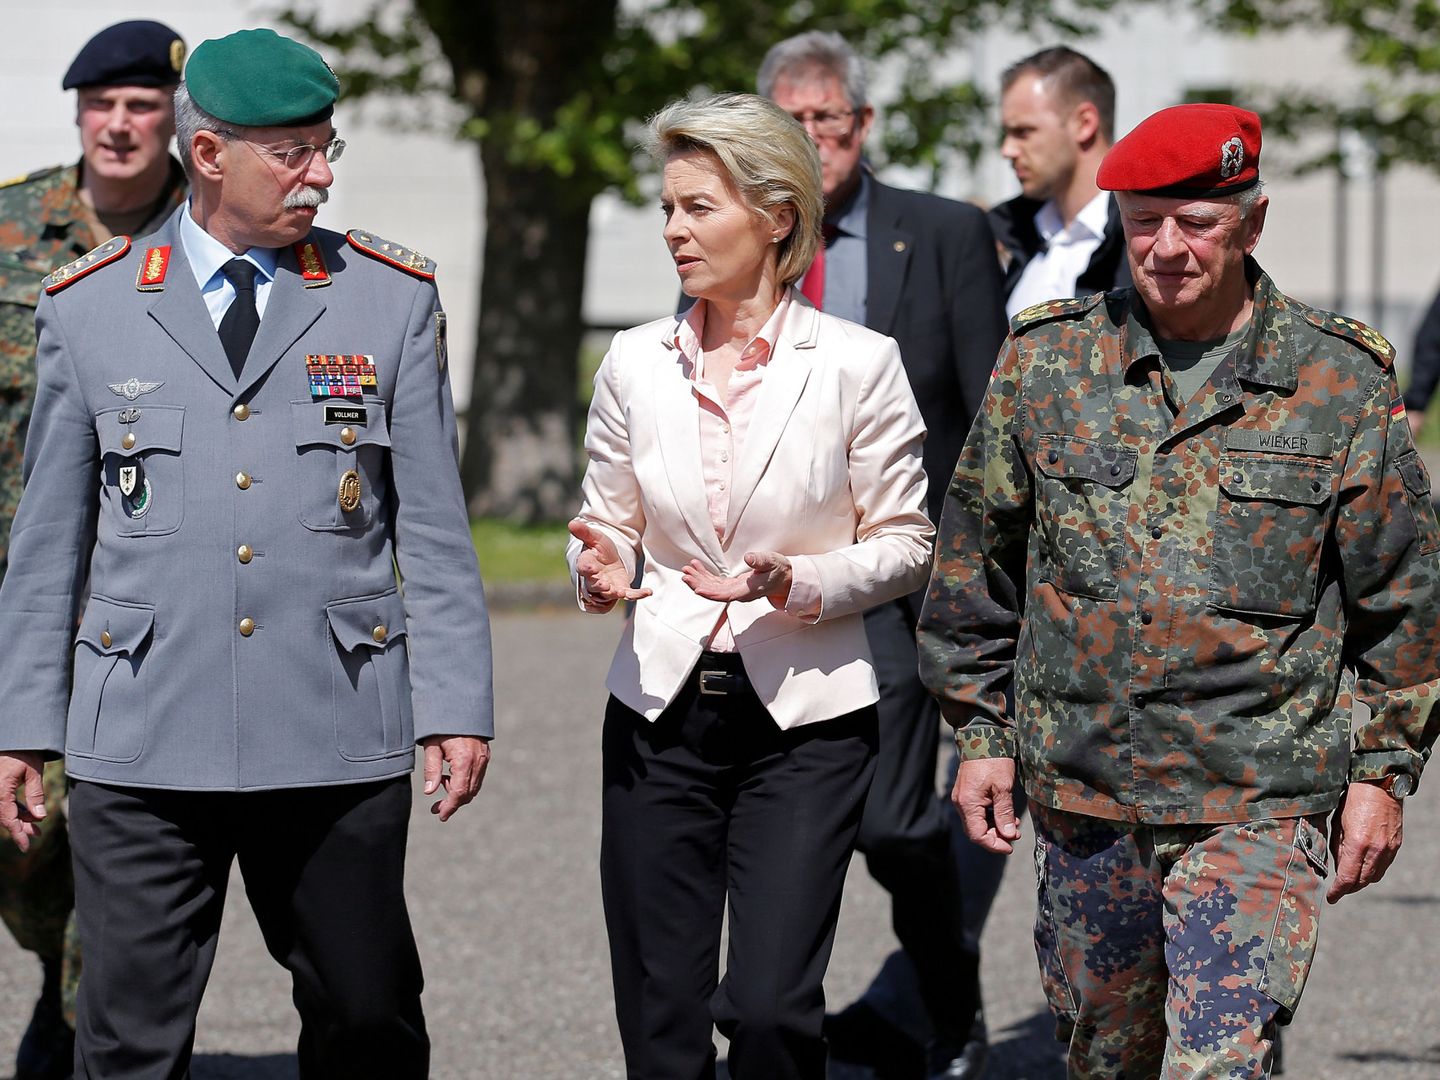 La ministra de Defensa alemana Ursula con altos mandos militares durante una visita a la base Leclerc, una instalación conjunta francoalemana cerca de Estrasburgo. (Reuters)